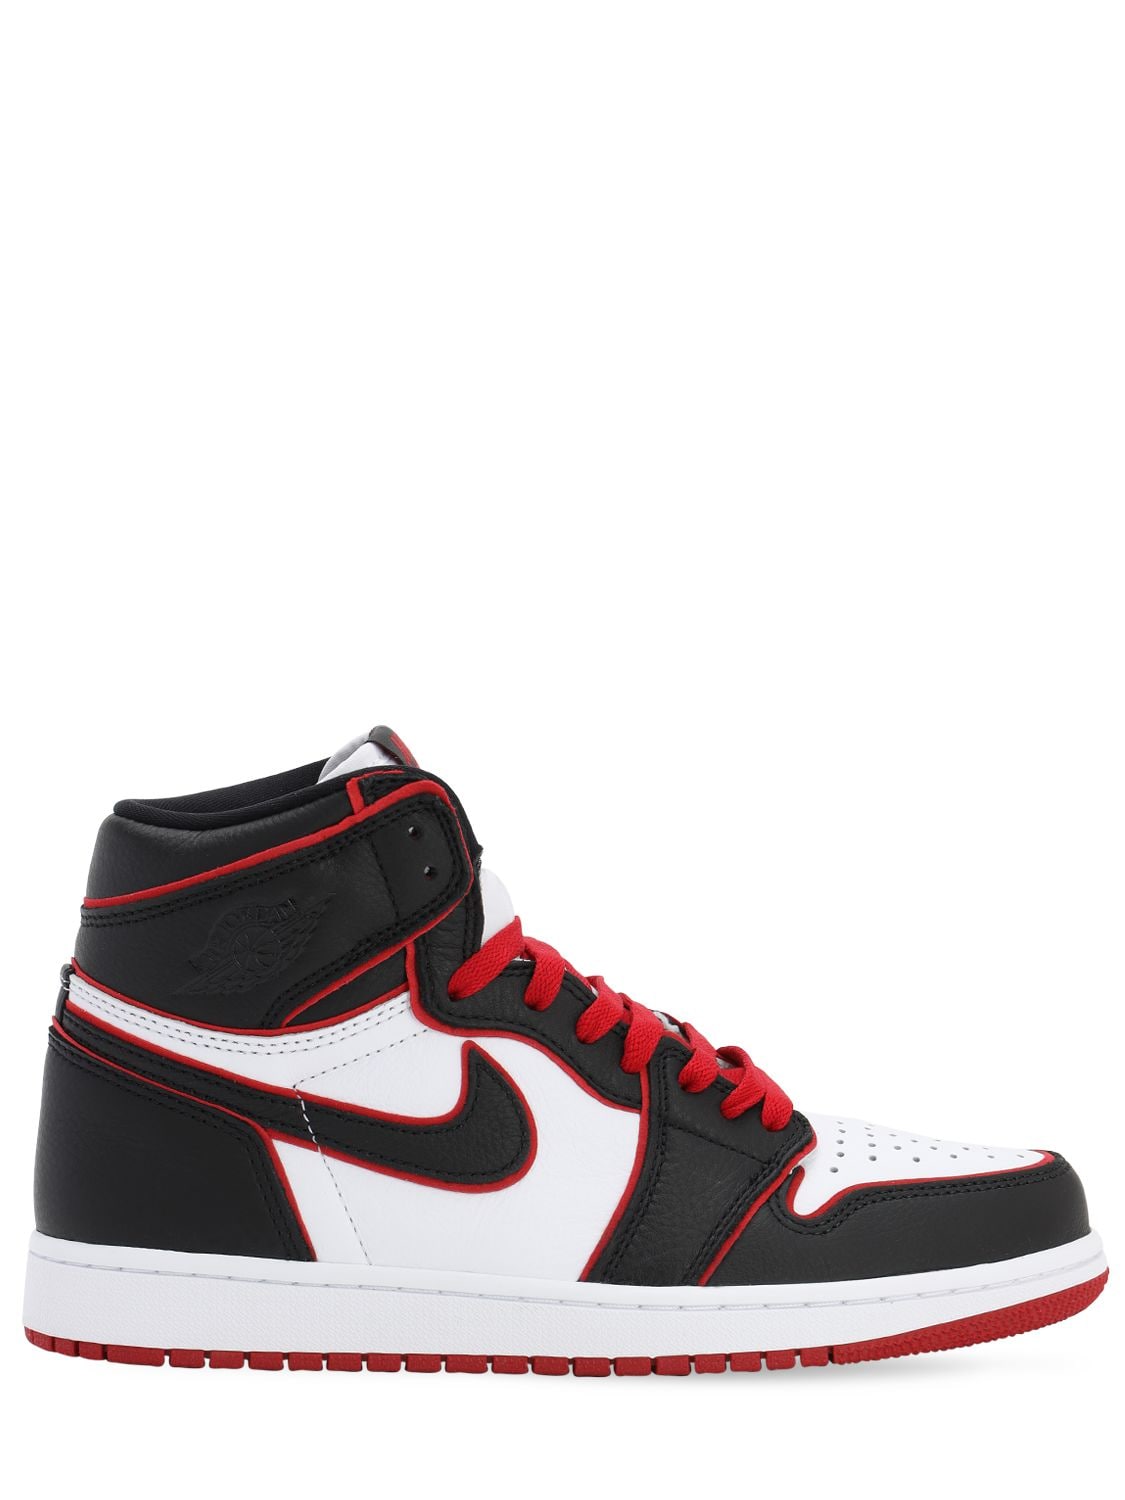 Nike Men's Air Jordan Retro 1 High Og Basketball Shoes In Black,red,white